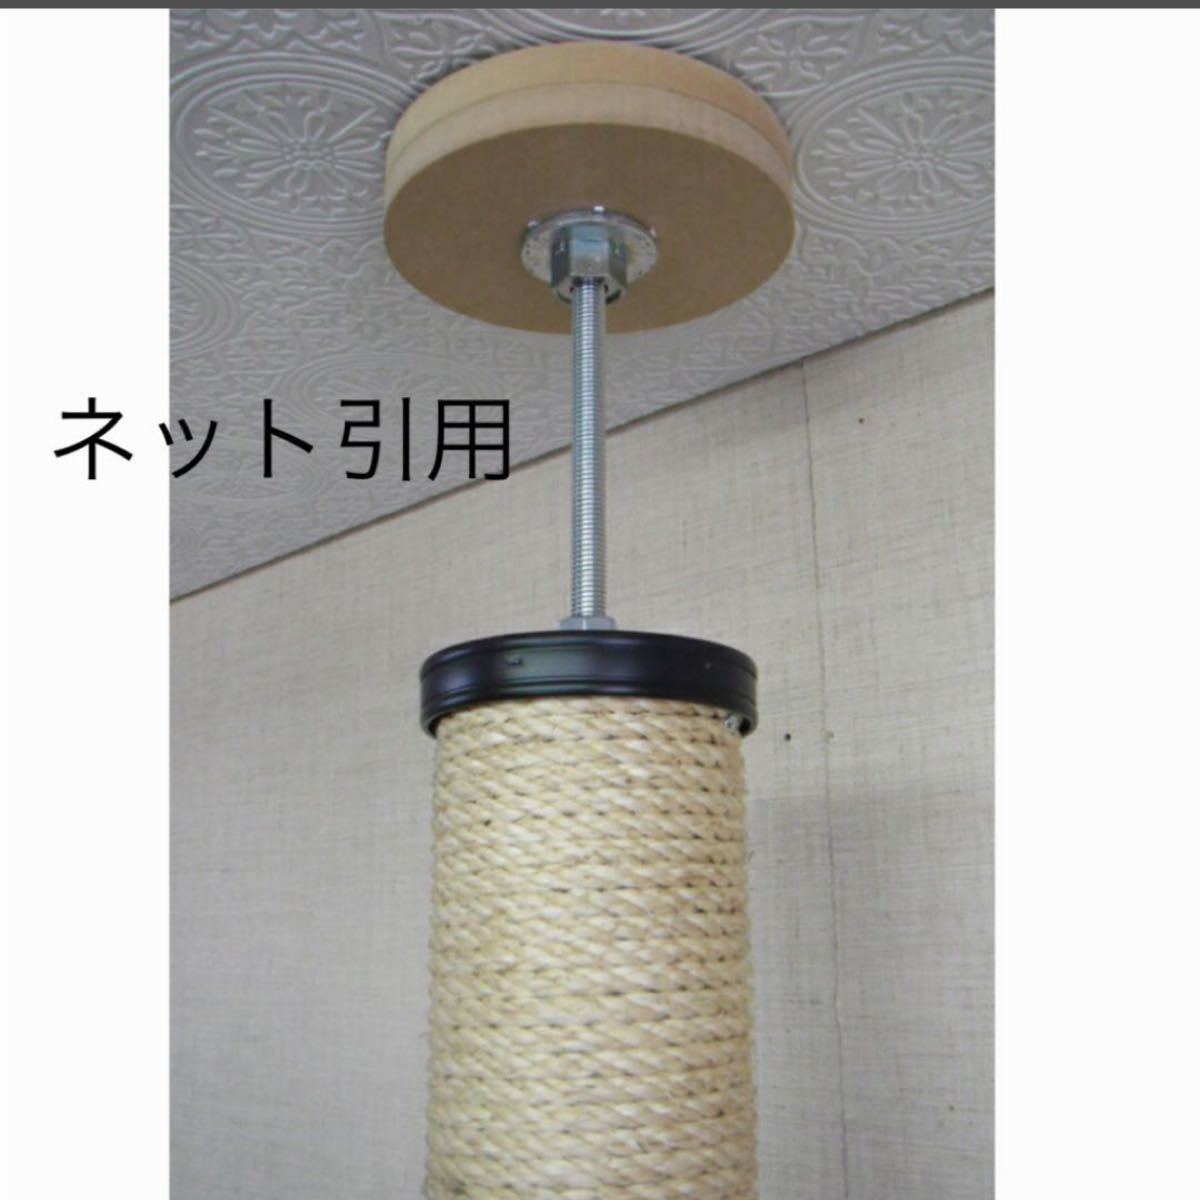 キャットタワー シンプル 日本製  突っ張り  麻紐  天井突っ張りタイプ 